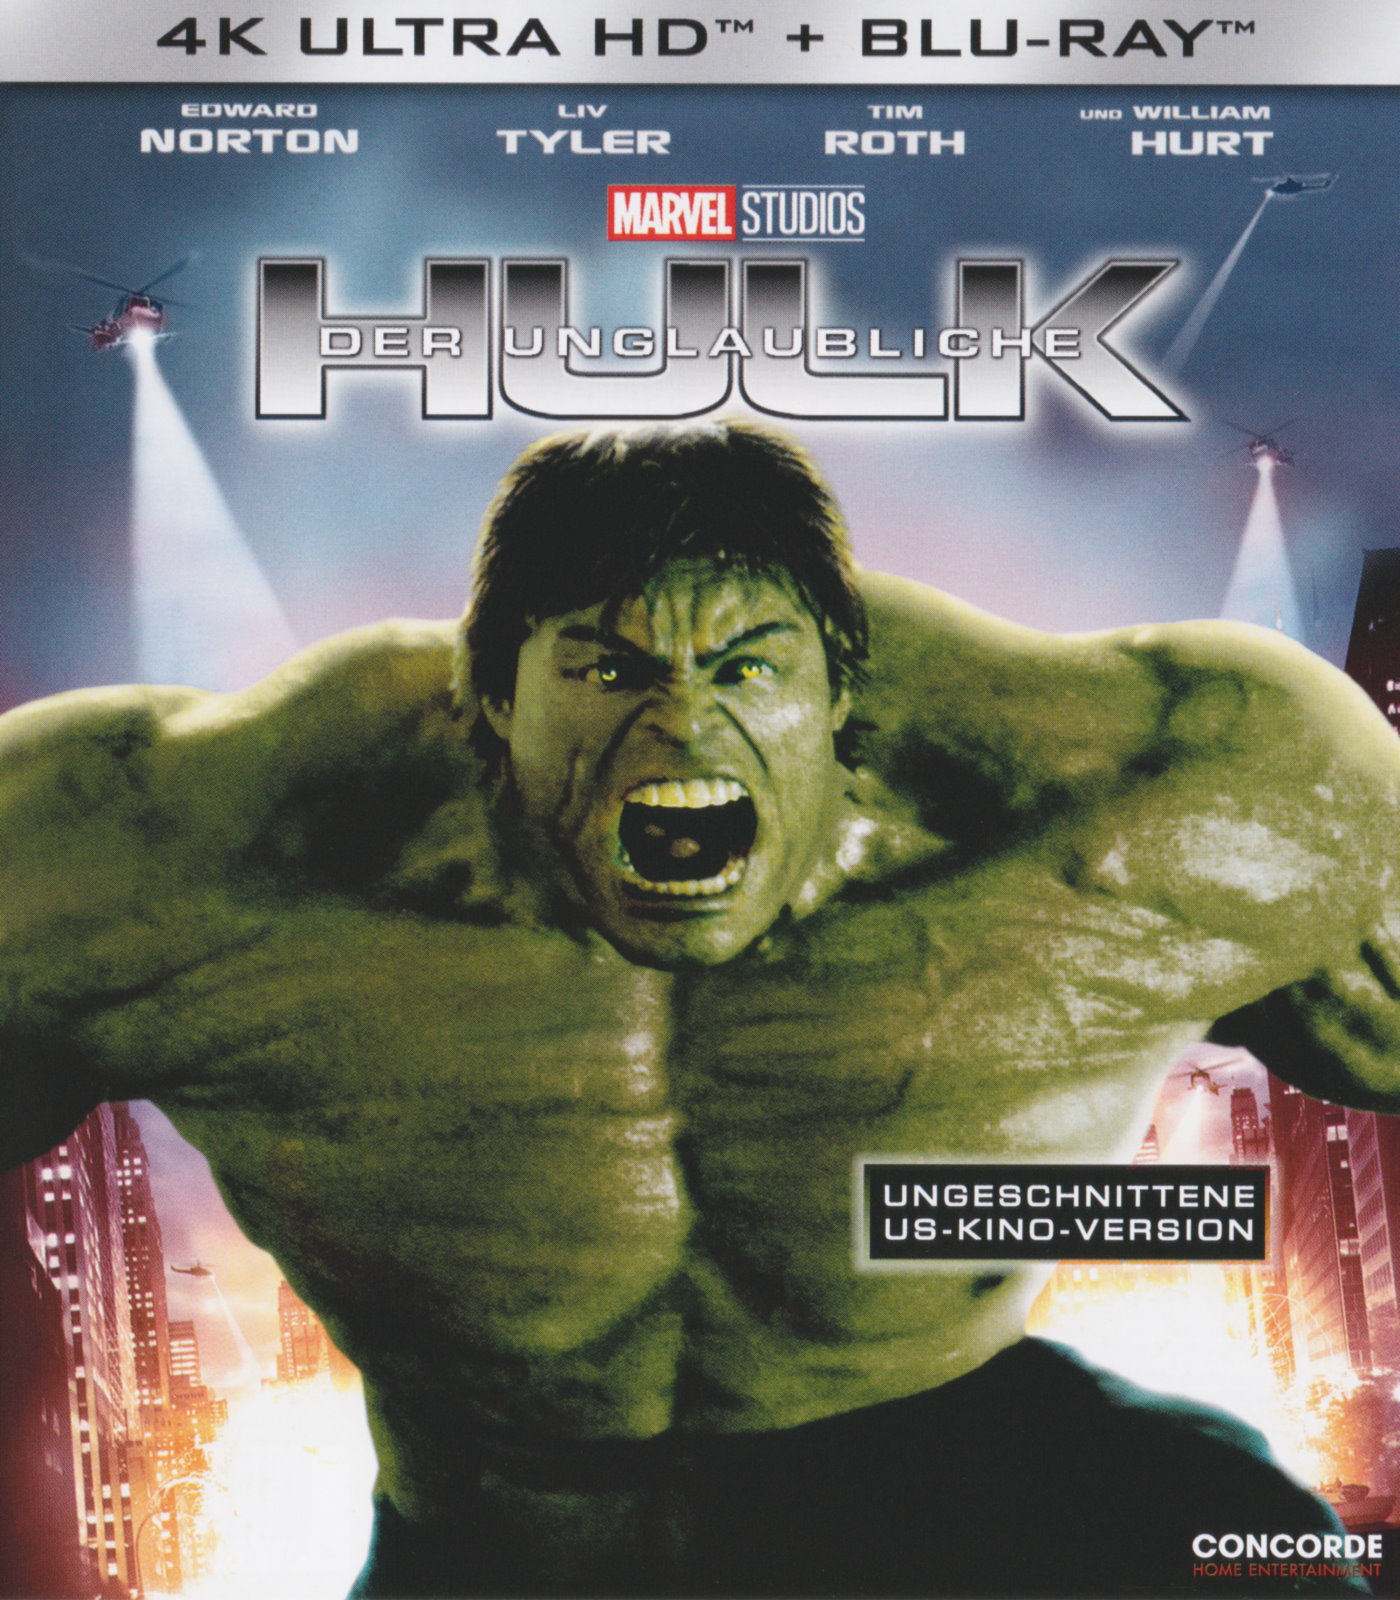 Cover - Der Unglaubliche Hulk.jpg